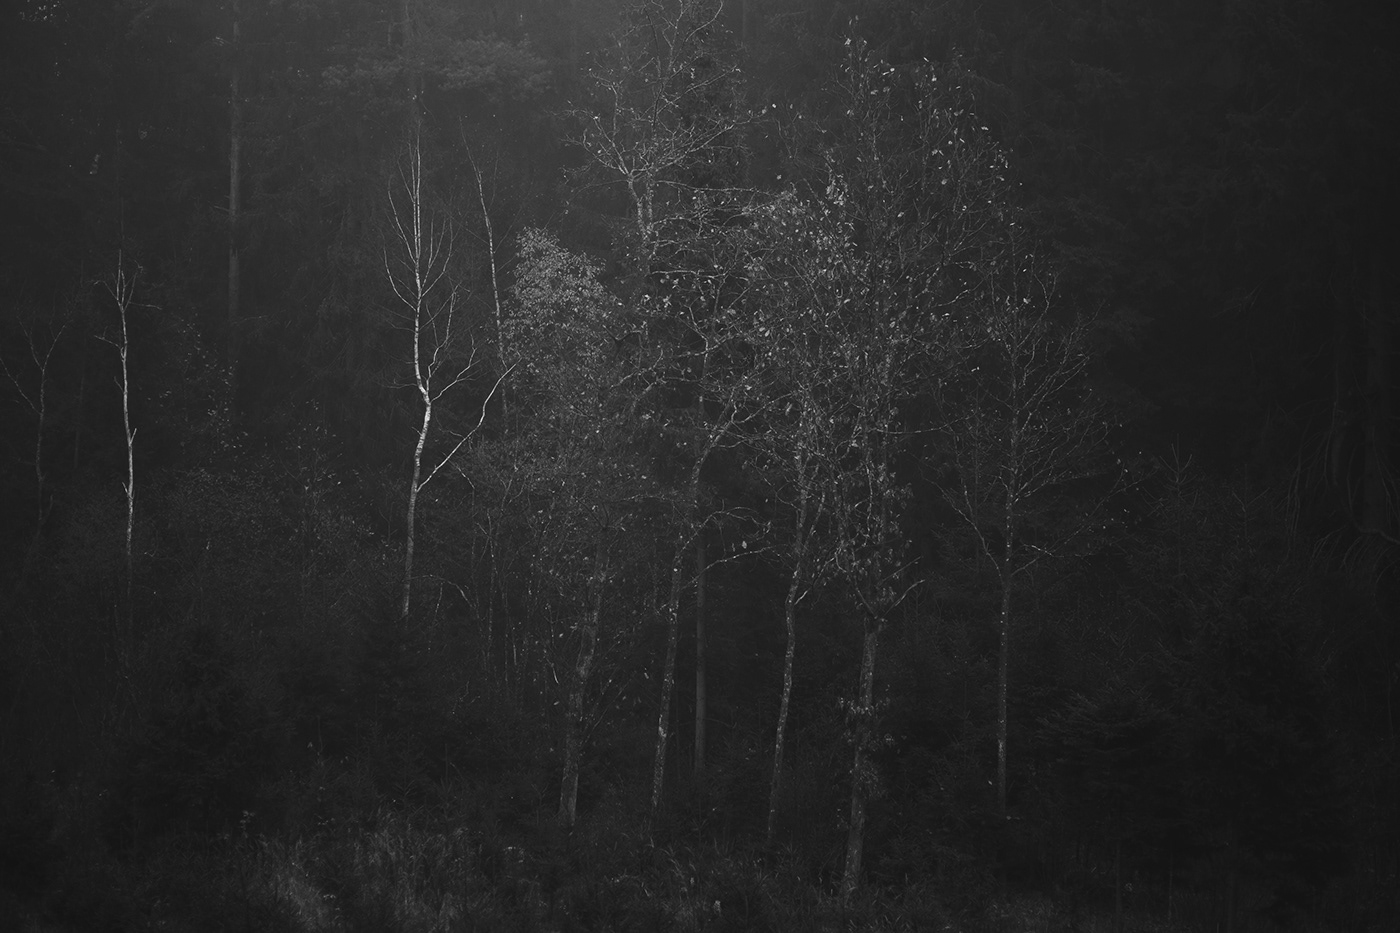 lietuva lithuania Mindaugas Buivydas tree art fog Fog Photography Minimalism minimal